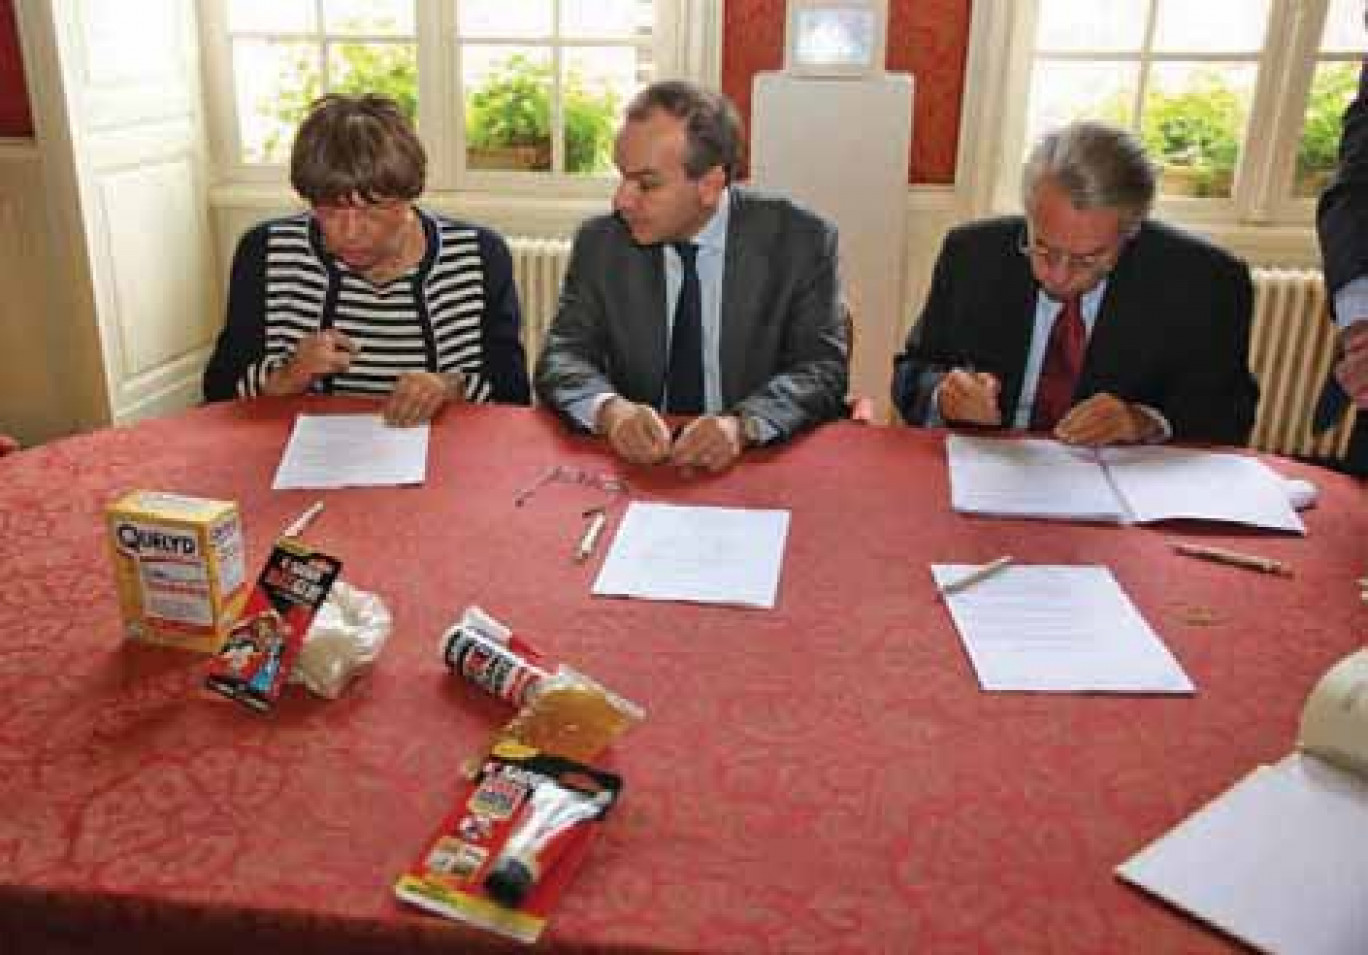 Renza Fresh, maire de Venette, Bernard Pinatel, PDG de Bostik et Philippe Marini, sénateur maire de Compiègne.